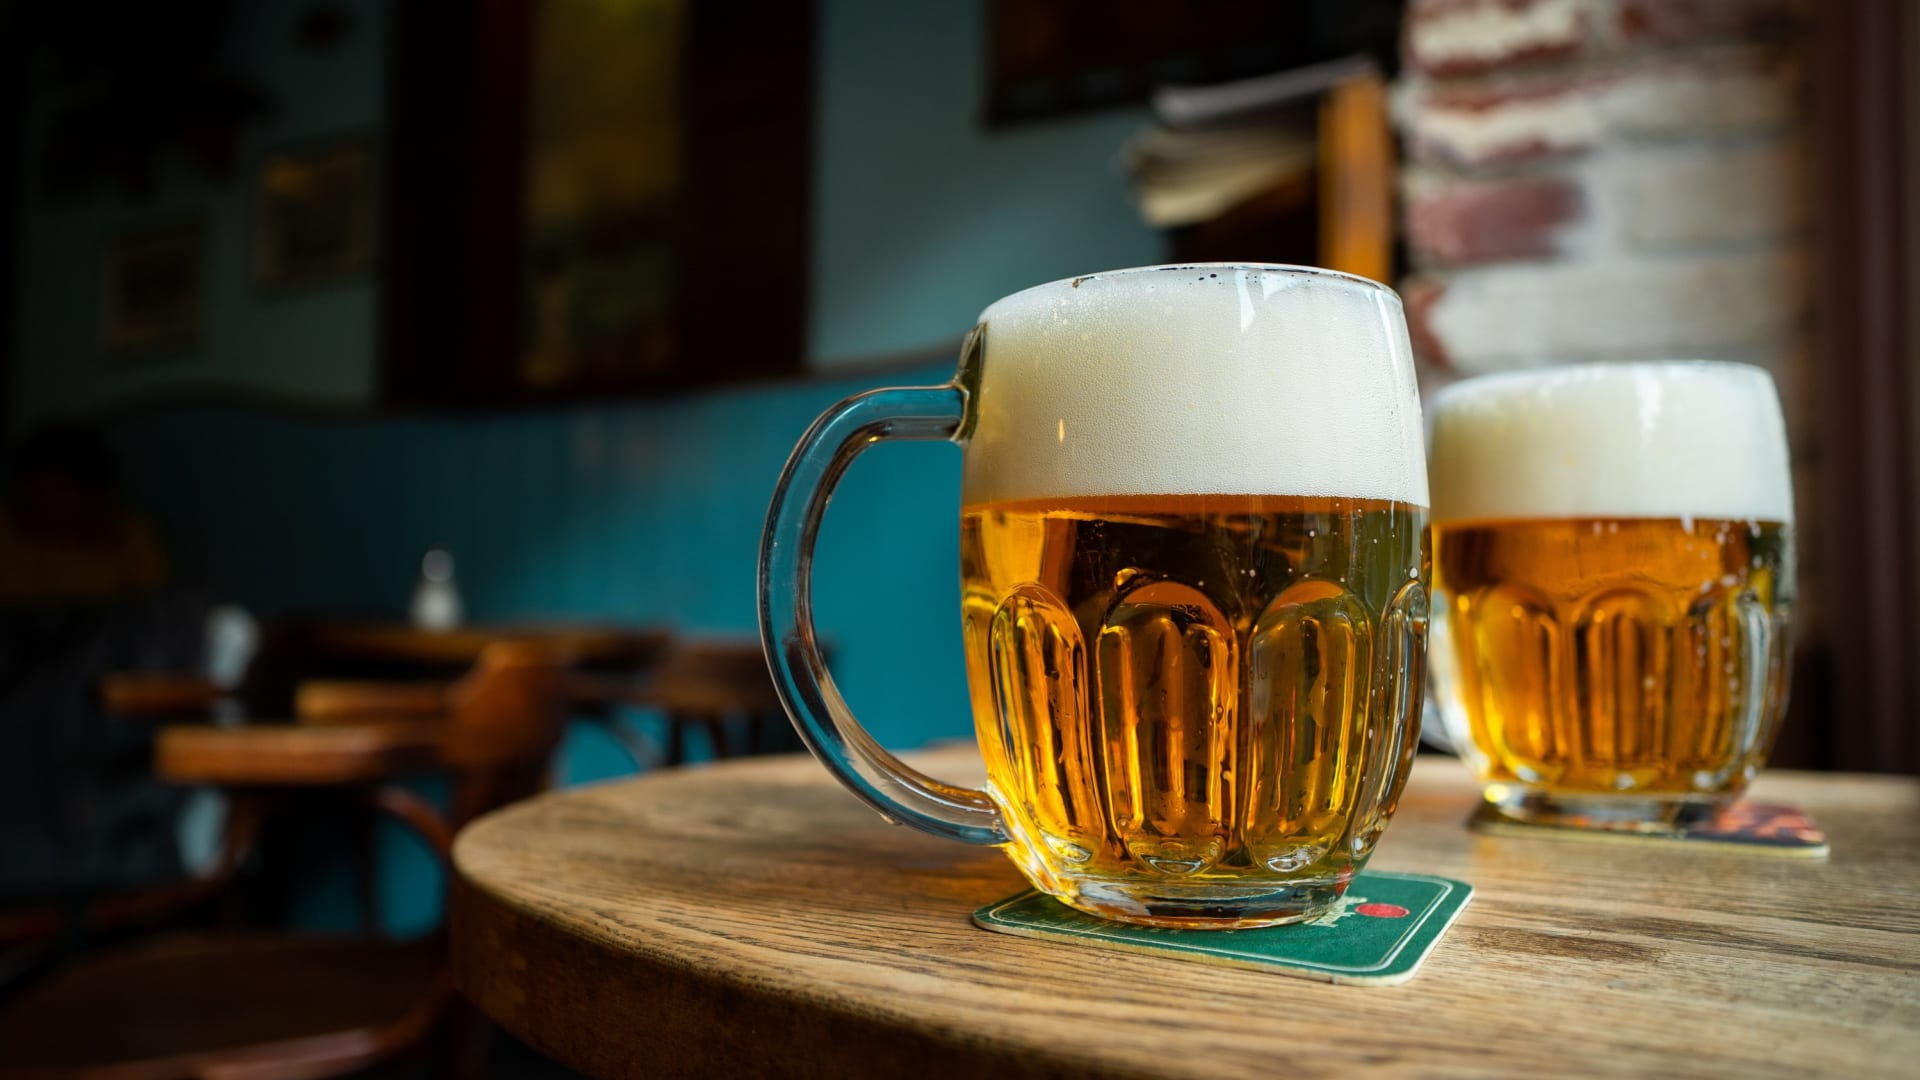 Pivní zajímavosti nejen z Plzně: Co všechno víte o typickém zlatavém moku? 2